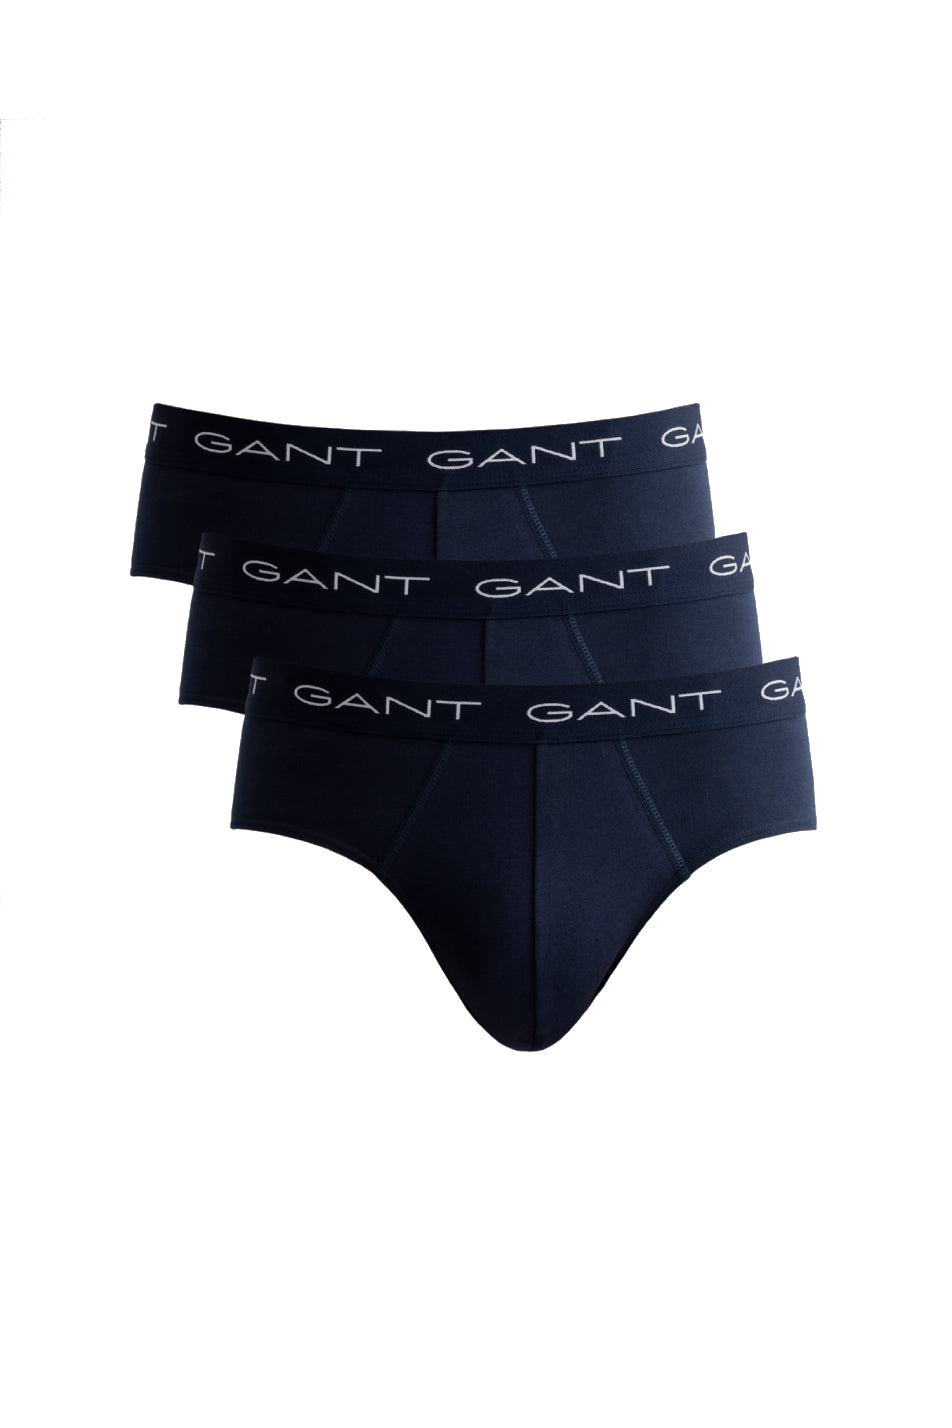 Gant 3 Pack Men's Brief